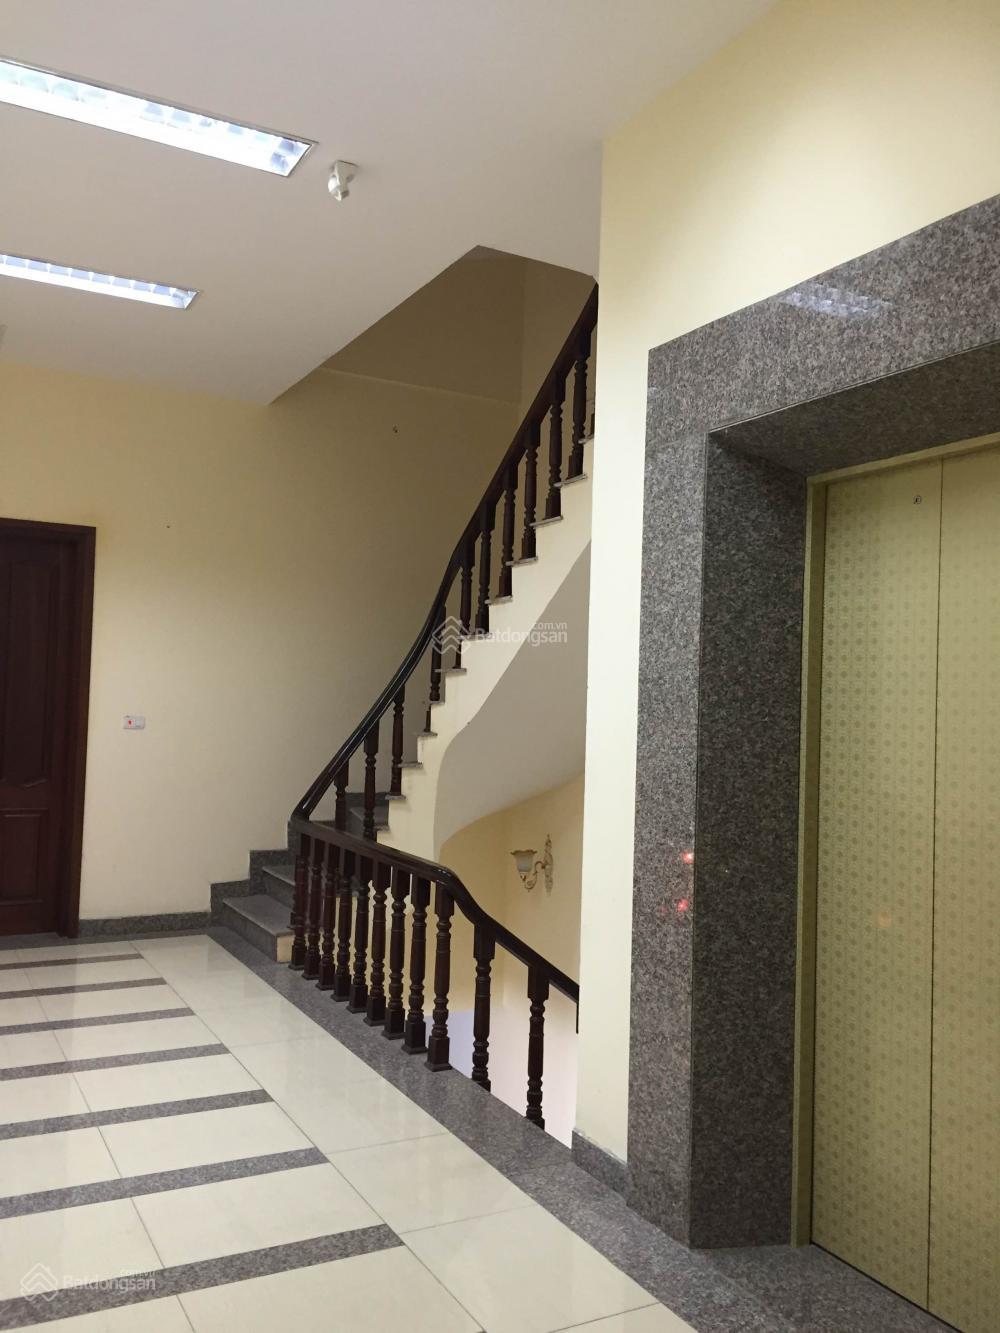 Cho thuê nhà thang máy xây mới tại mặt phố Minh Khai, DT 90m2 x 6 tầng, MT 5m, thông sàn, giá 70tr